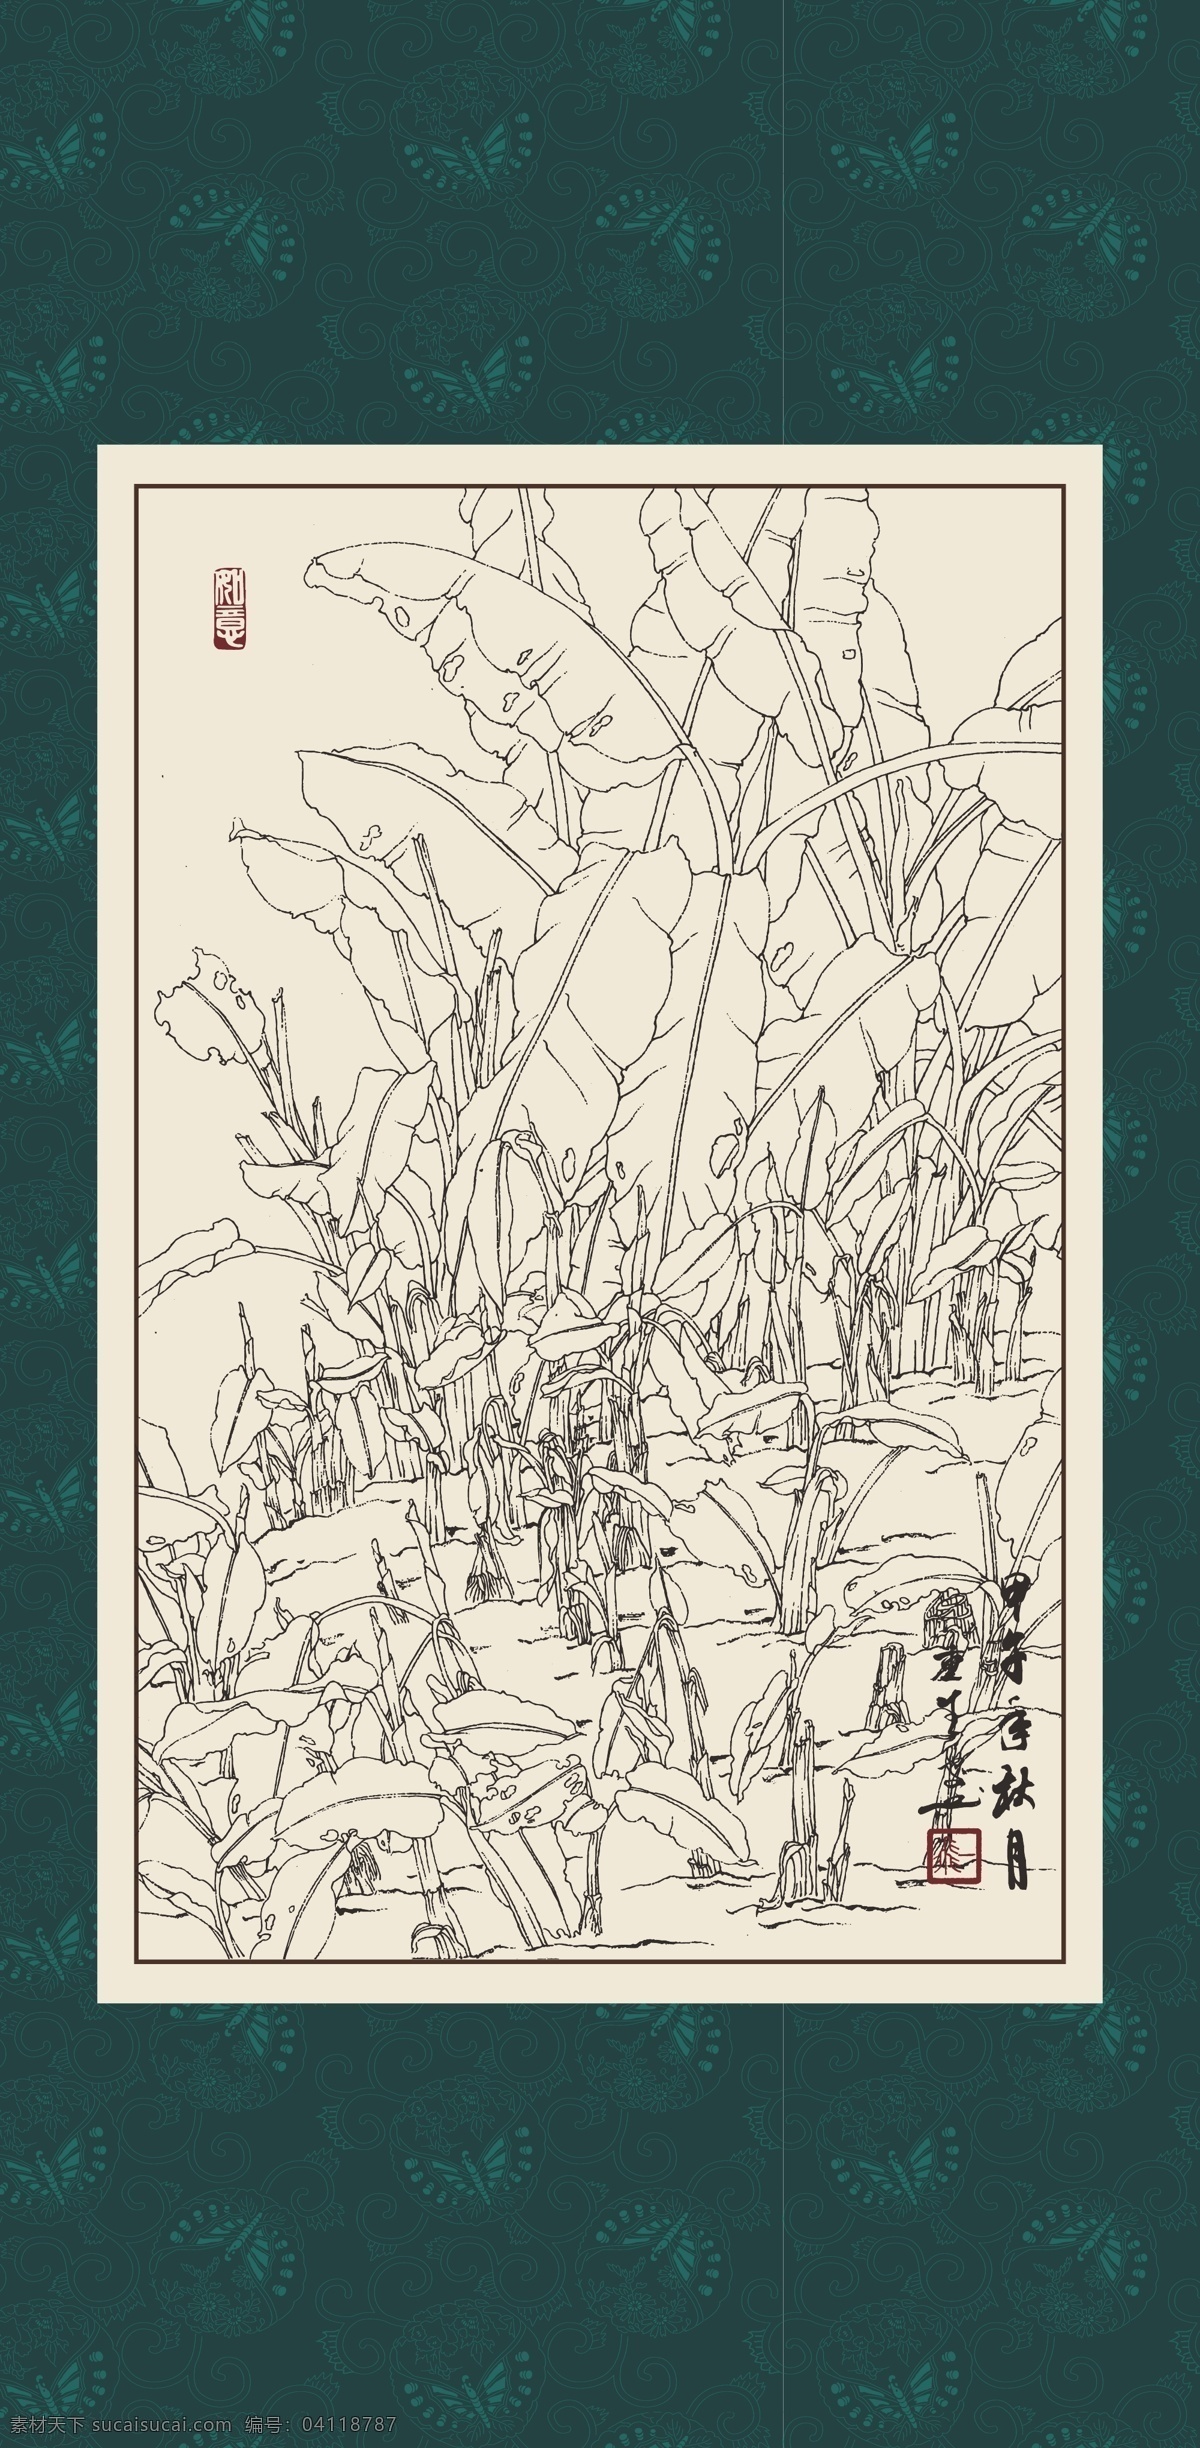 白描 线描 绘画 手绘 国画 印章 植物 花卉 工笔 gx150052 白描芭蕉 文化艺术 绘画书法